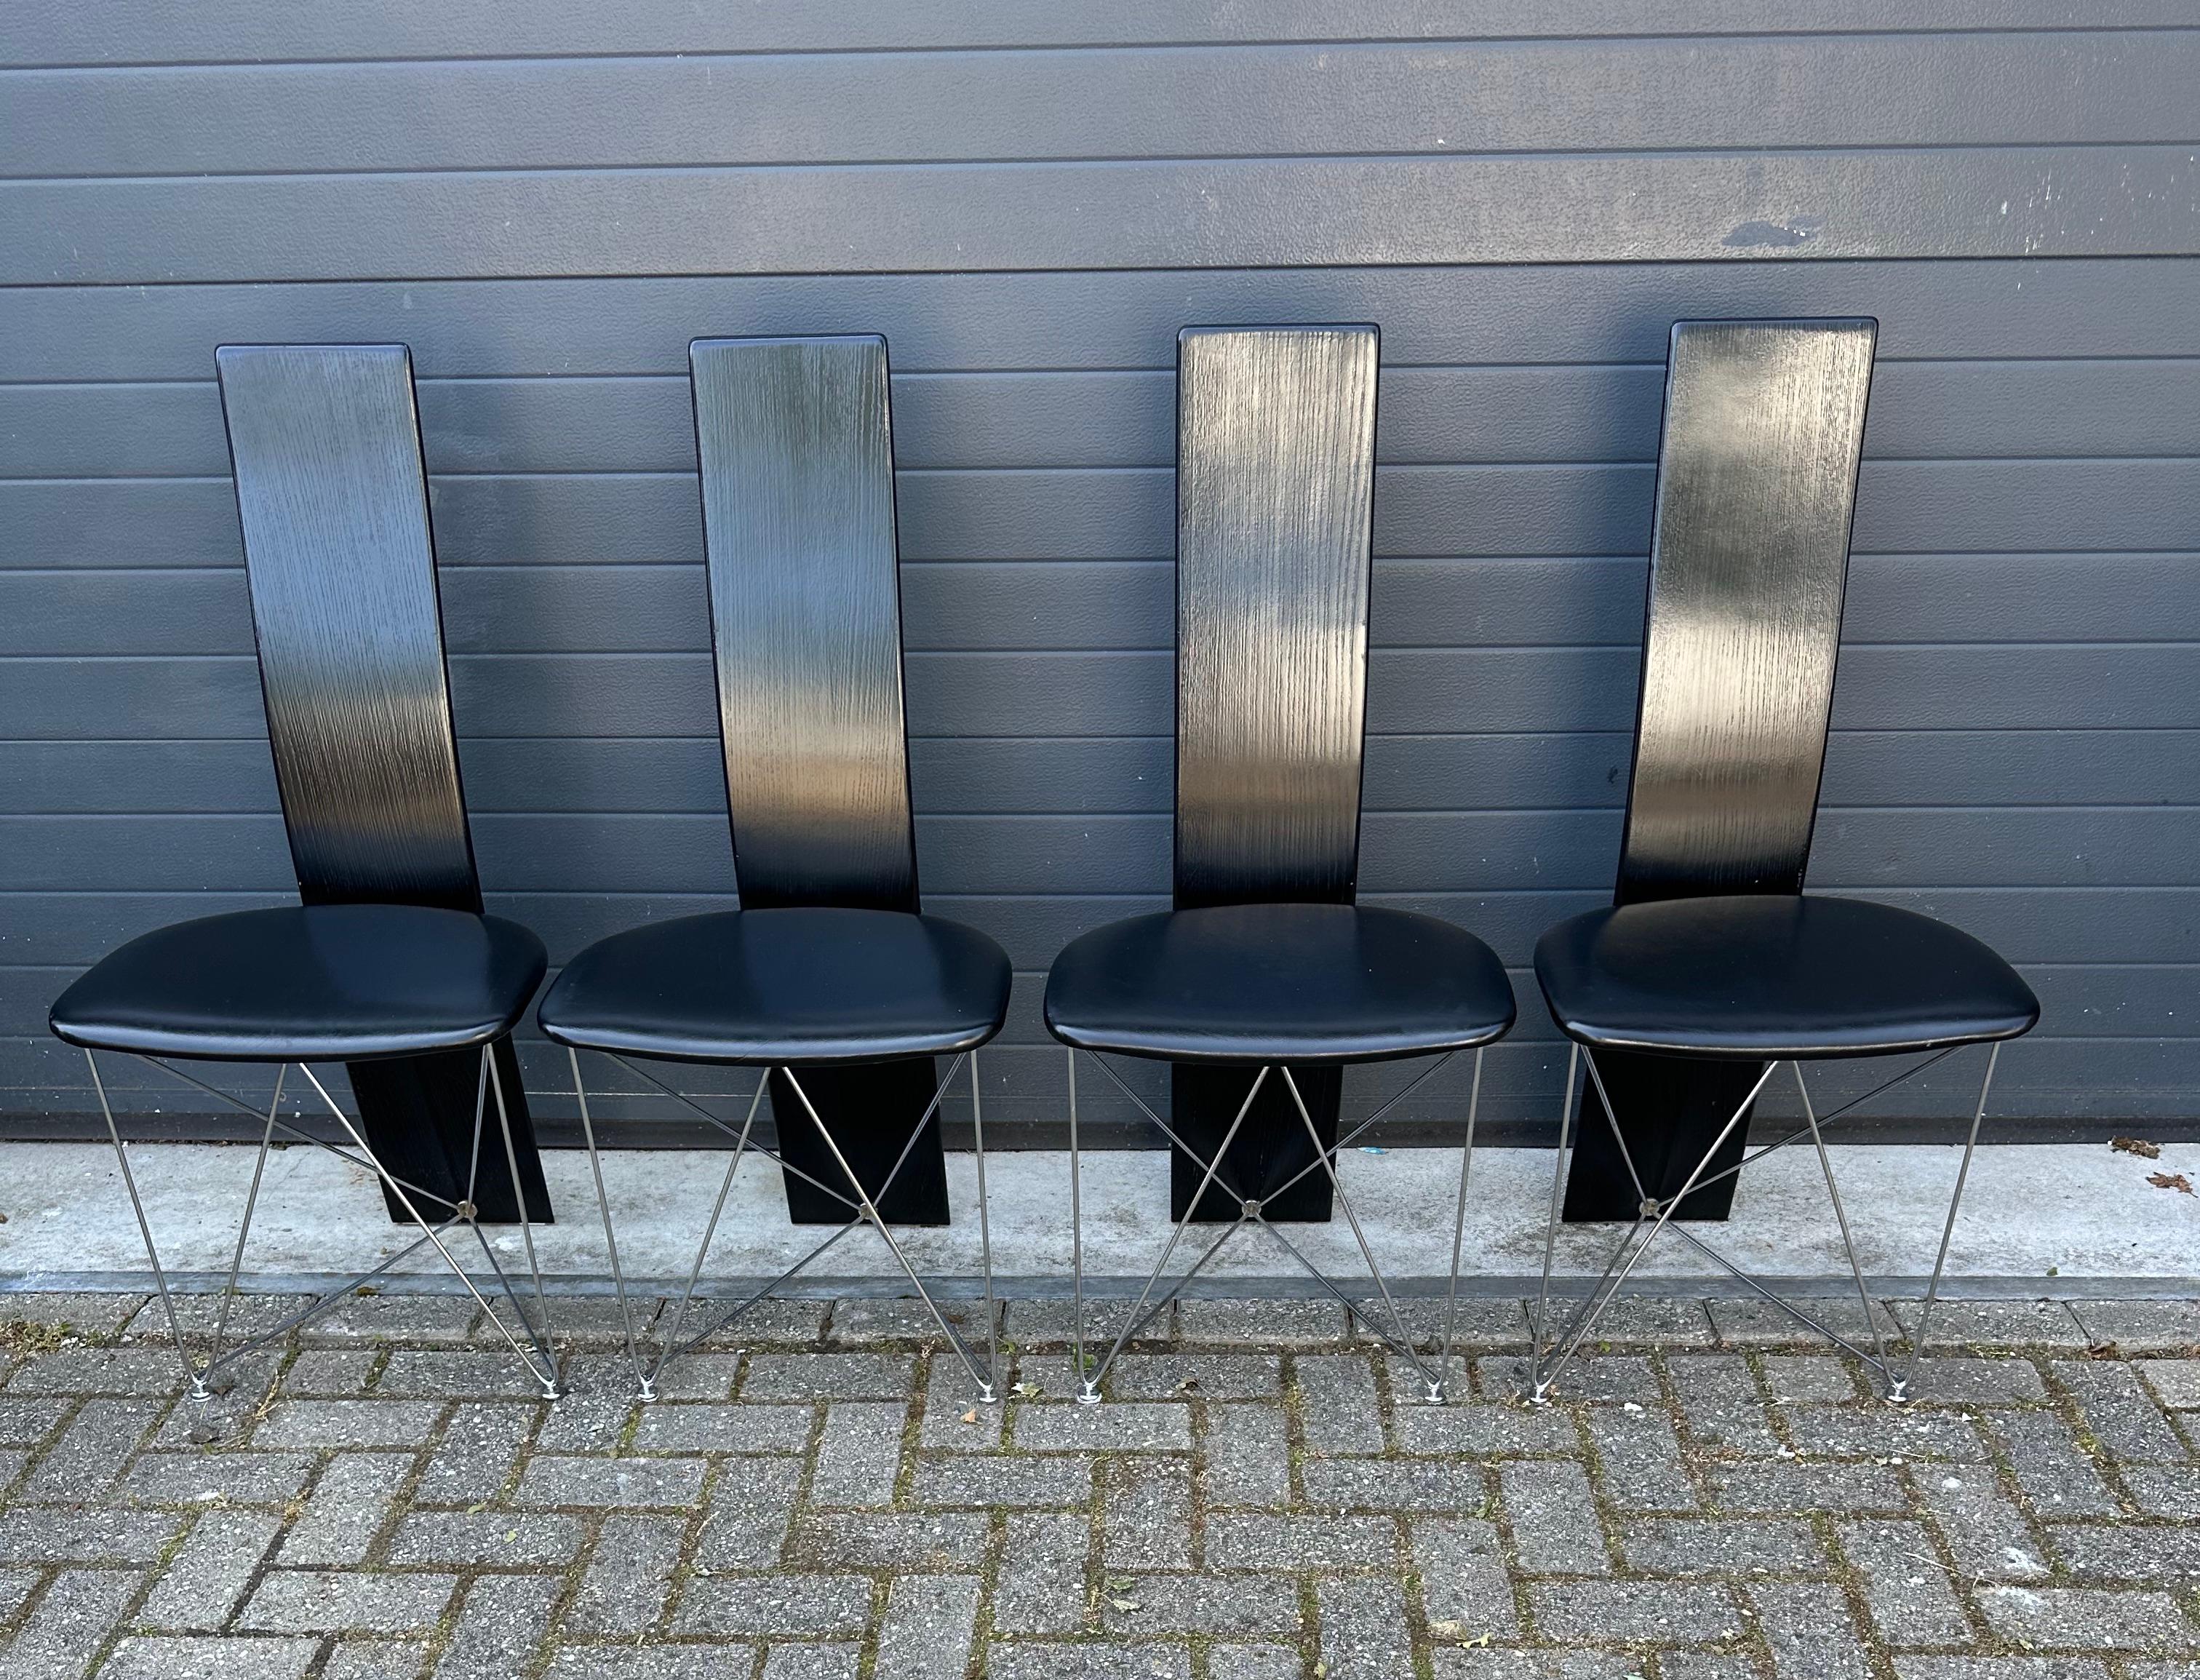 Ensemble rare et entièrement original de quatre chaises de salle à manger de style Post Modern.

Design norvégien, Modèle : Concorde. Dessiné par Torstein Flatøy pour Bahus.

Cet ensemble exceptionnellement beau et, selon nous, très rare de chaises